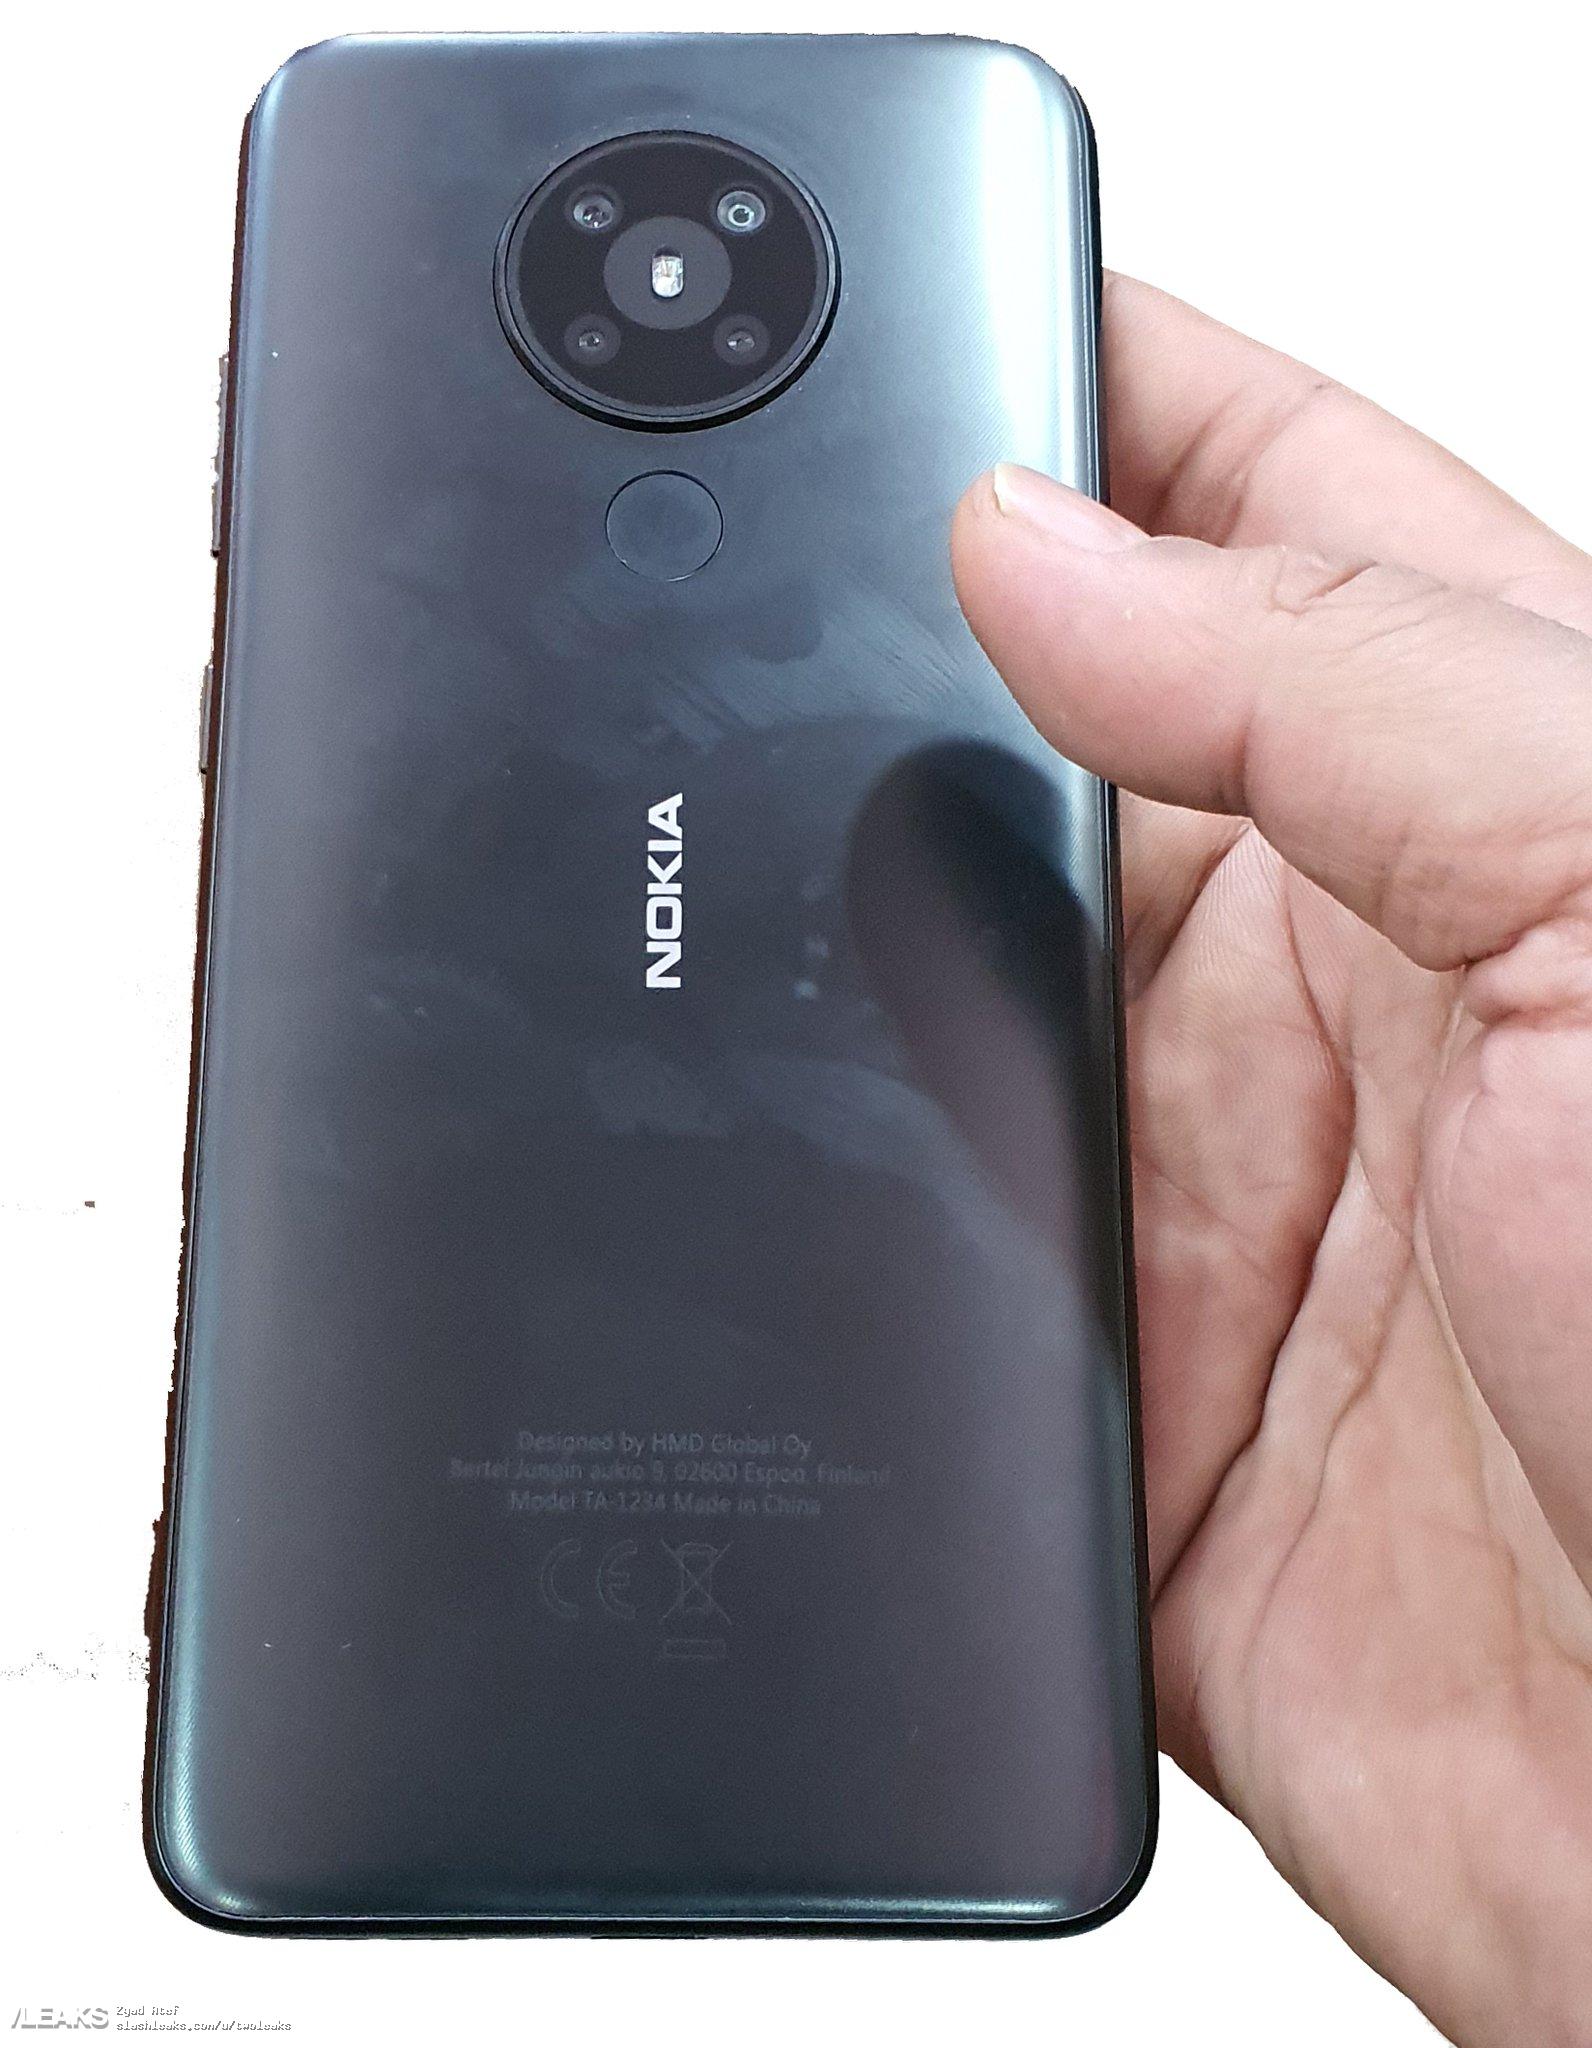 Nokia 5.2 kiedy premiera plotki przecieki zdjęcia specyfikacja dane techniczne